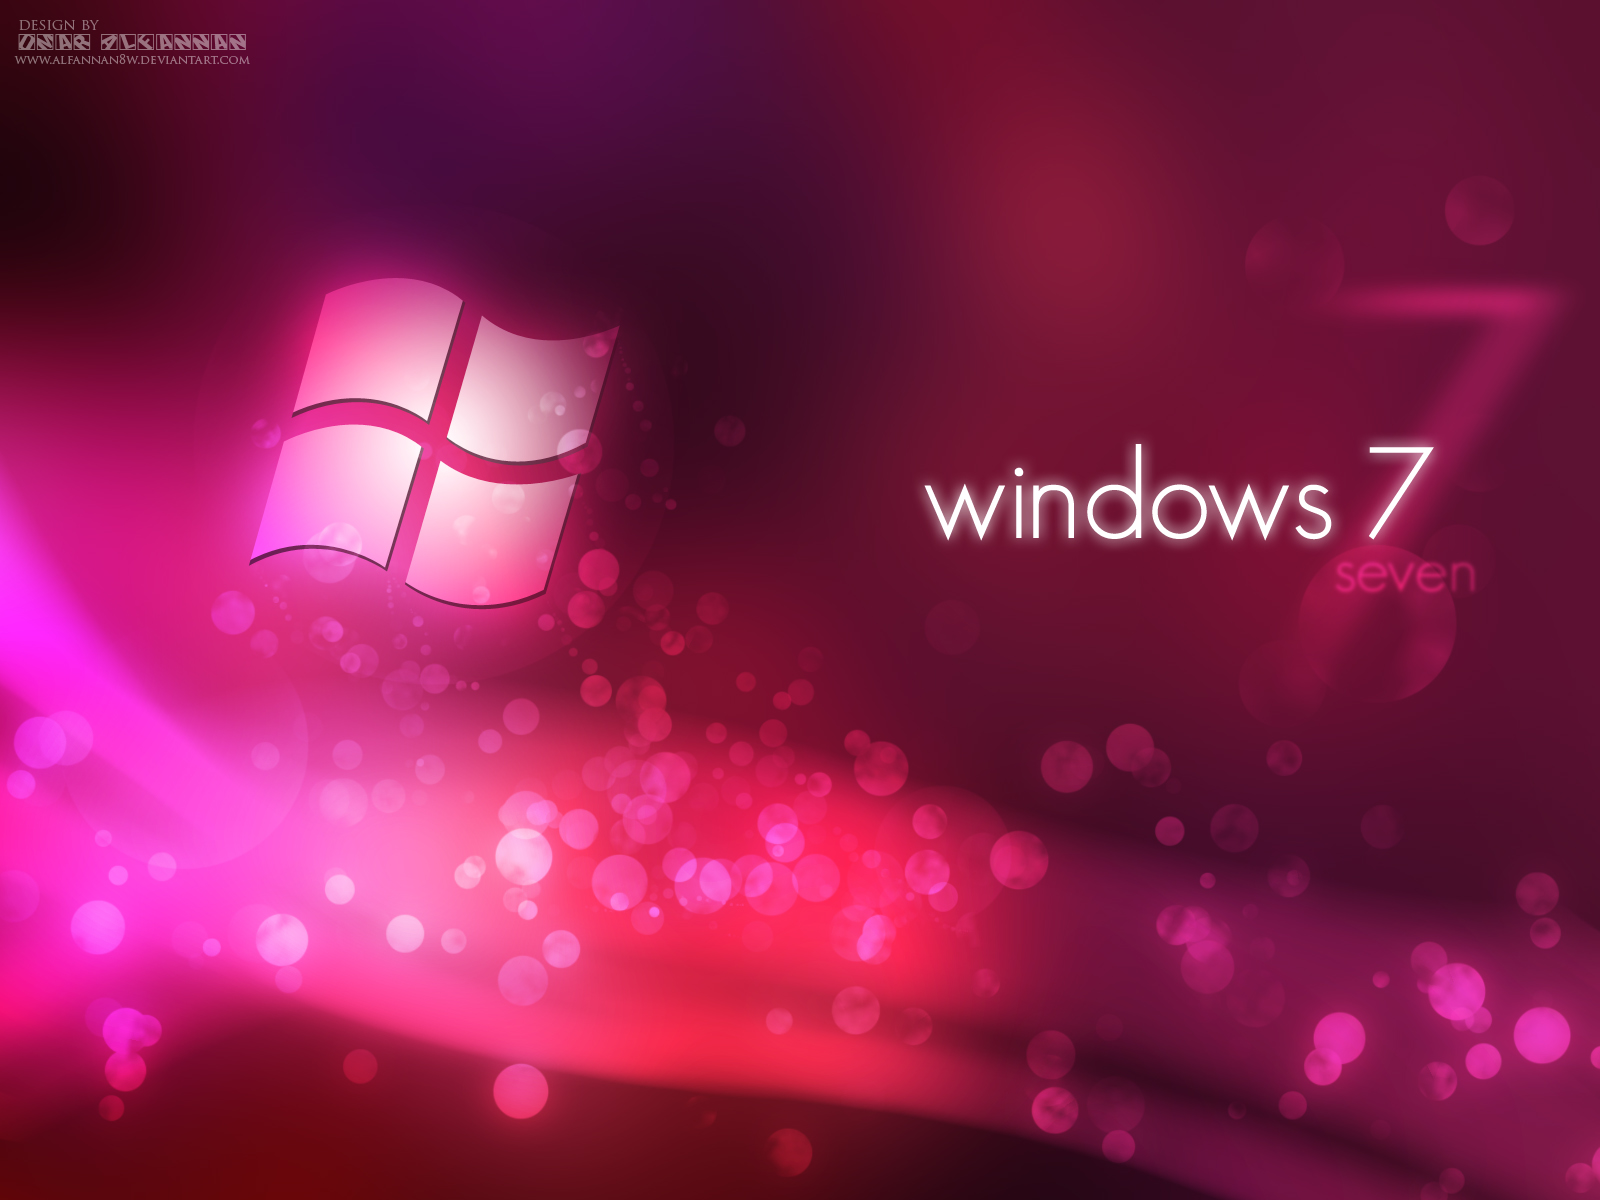 Hình nền Windows 7 phiên bản màu hồng là một trong những lựa chọn tối ưu cho những người yêu thích màu hồng. Thiết kế đơn giản nhưng đầy tinh tế và phù hợp với nhiều phong cách khác nhau. Nếu bạn muốn cập nhật không gian làm việc của mình, hãy tải ngay hình nền Windows 7 phiên bản màu hồng này để tăng thêm phần sinh động và sự tinh tế cho máy tính của mình.